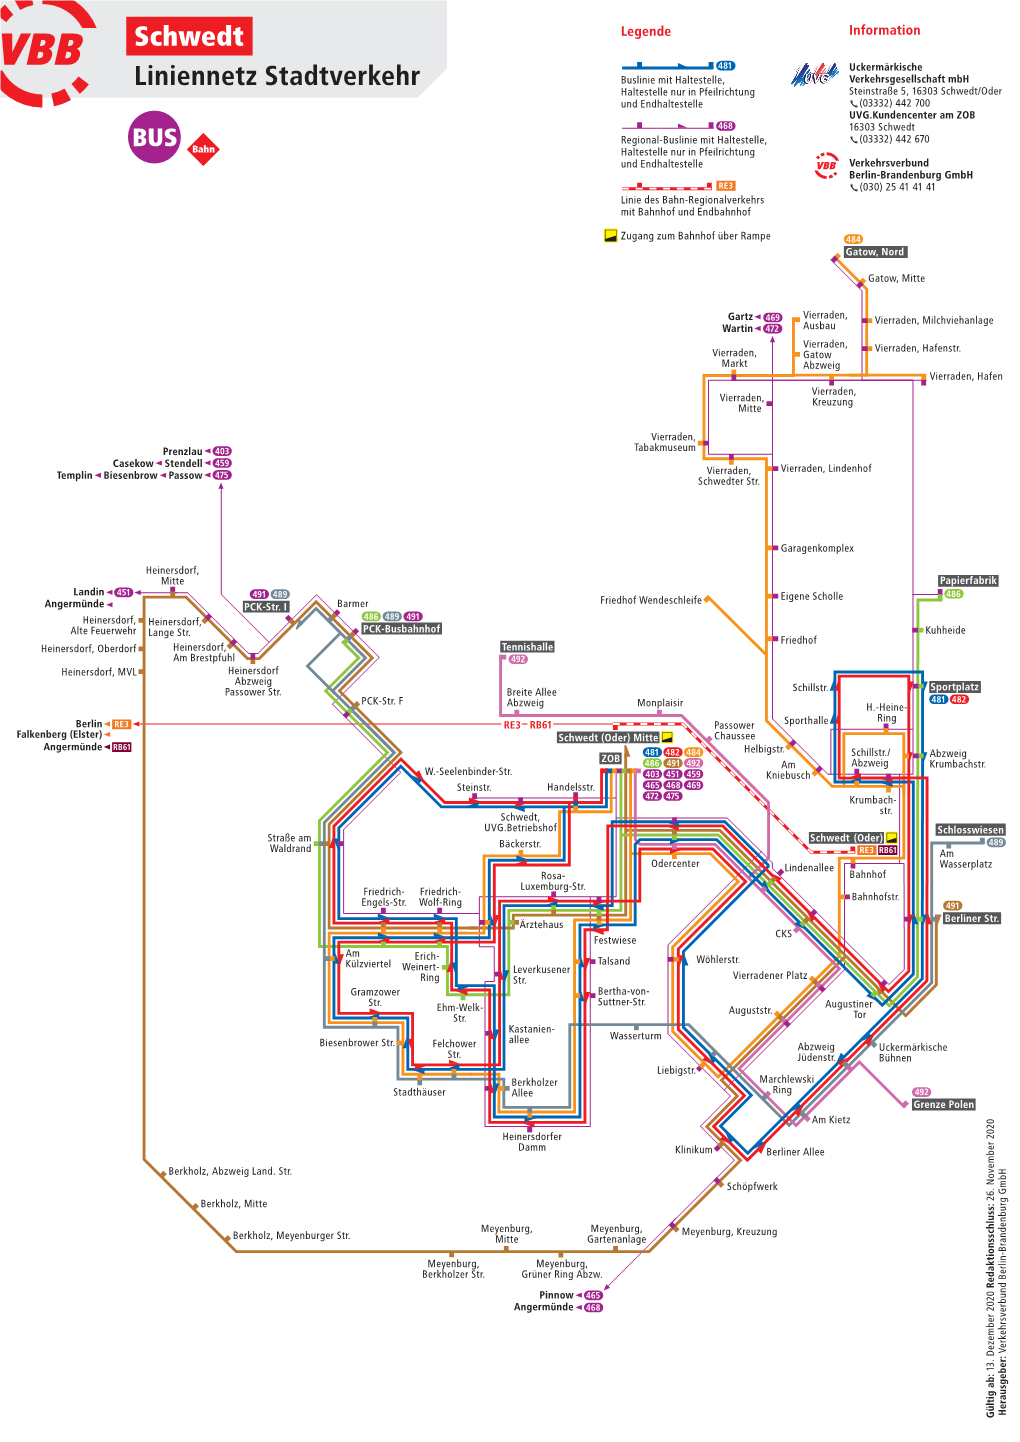 Schwedt Liniennetz Stadtverkehr